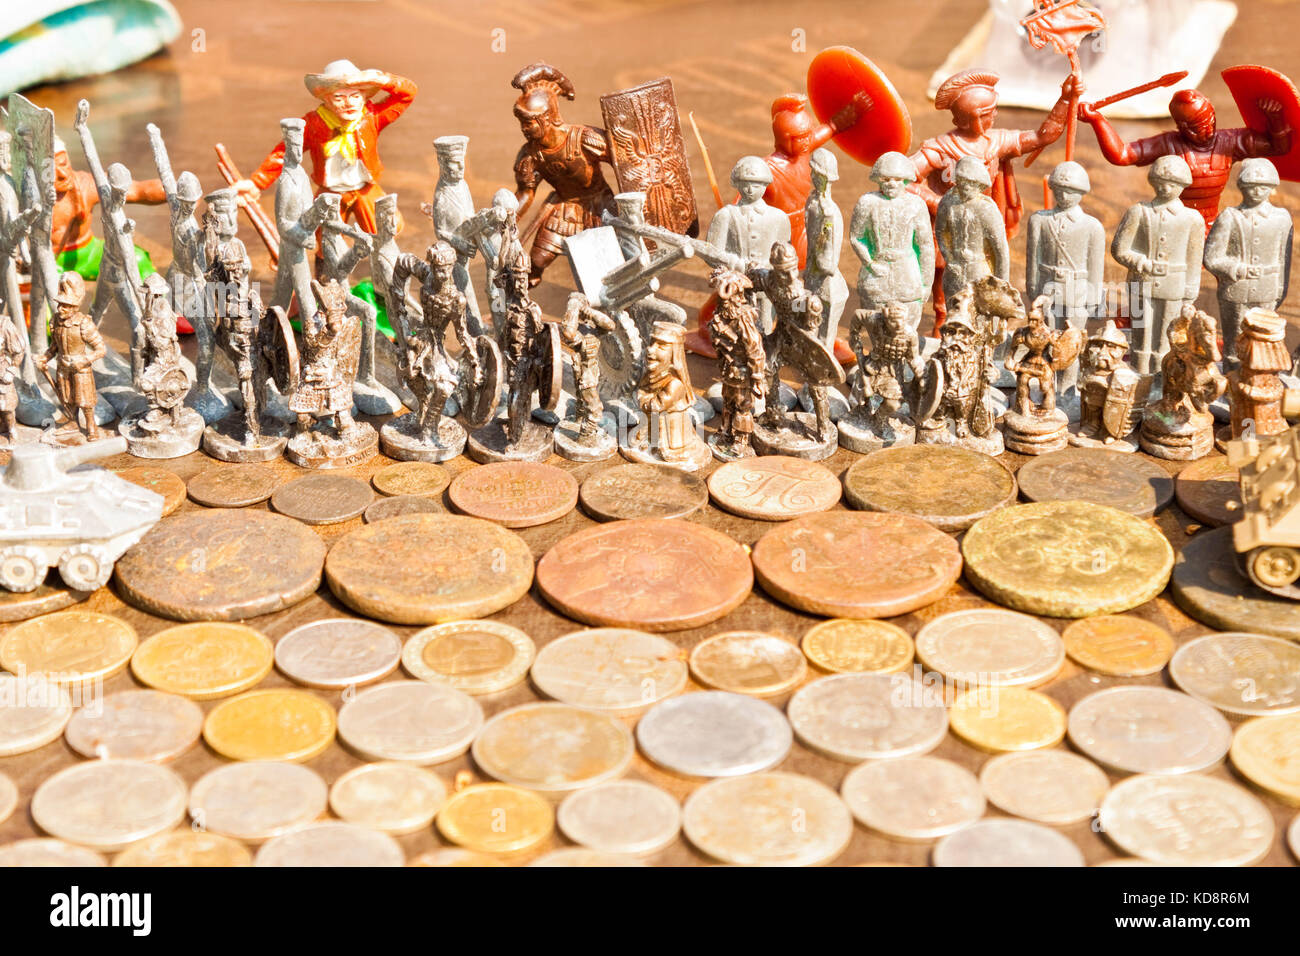 Monete antiche e toy soldiers su una bancarella di un mercato delle pulci di Lviv, Ucraina. Foto Stock